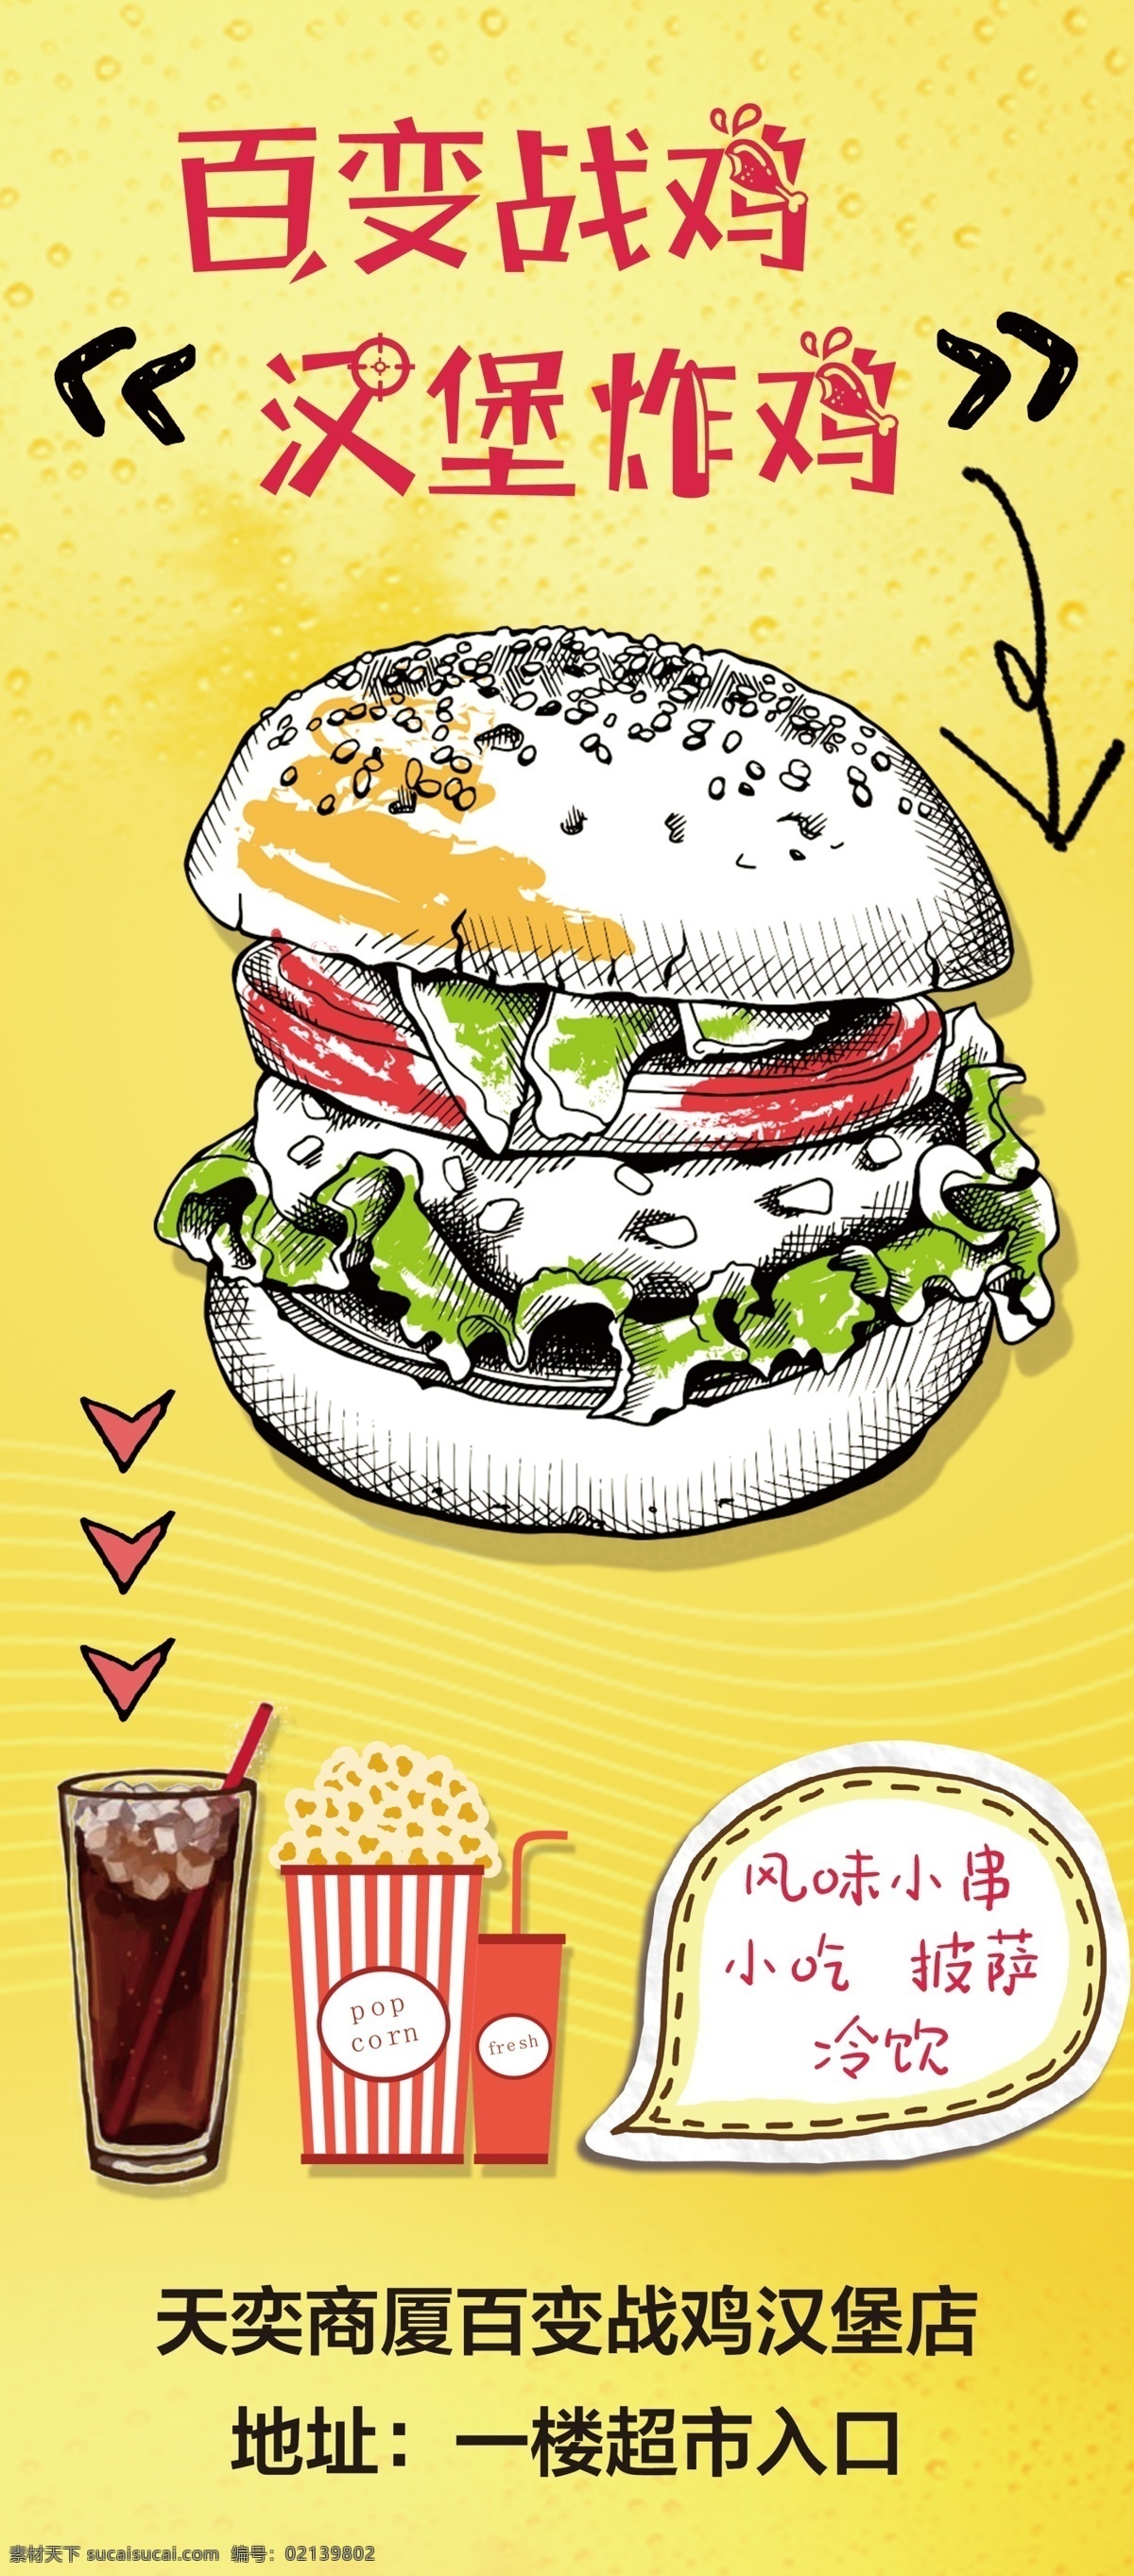 汉堡 手绘 炸鸡图片 汉堡炸鸡 手绘汉堡 可爱 个性 海报 展架 易拉宝 展板 宣传广告 展板模板